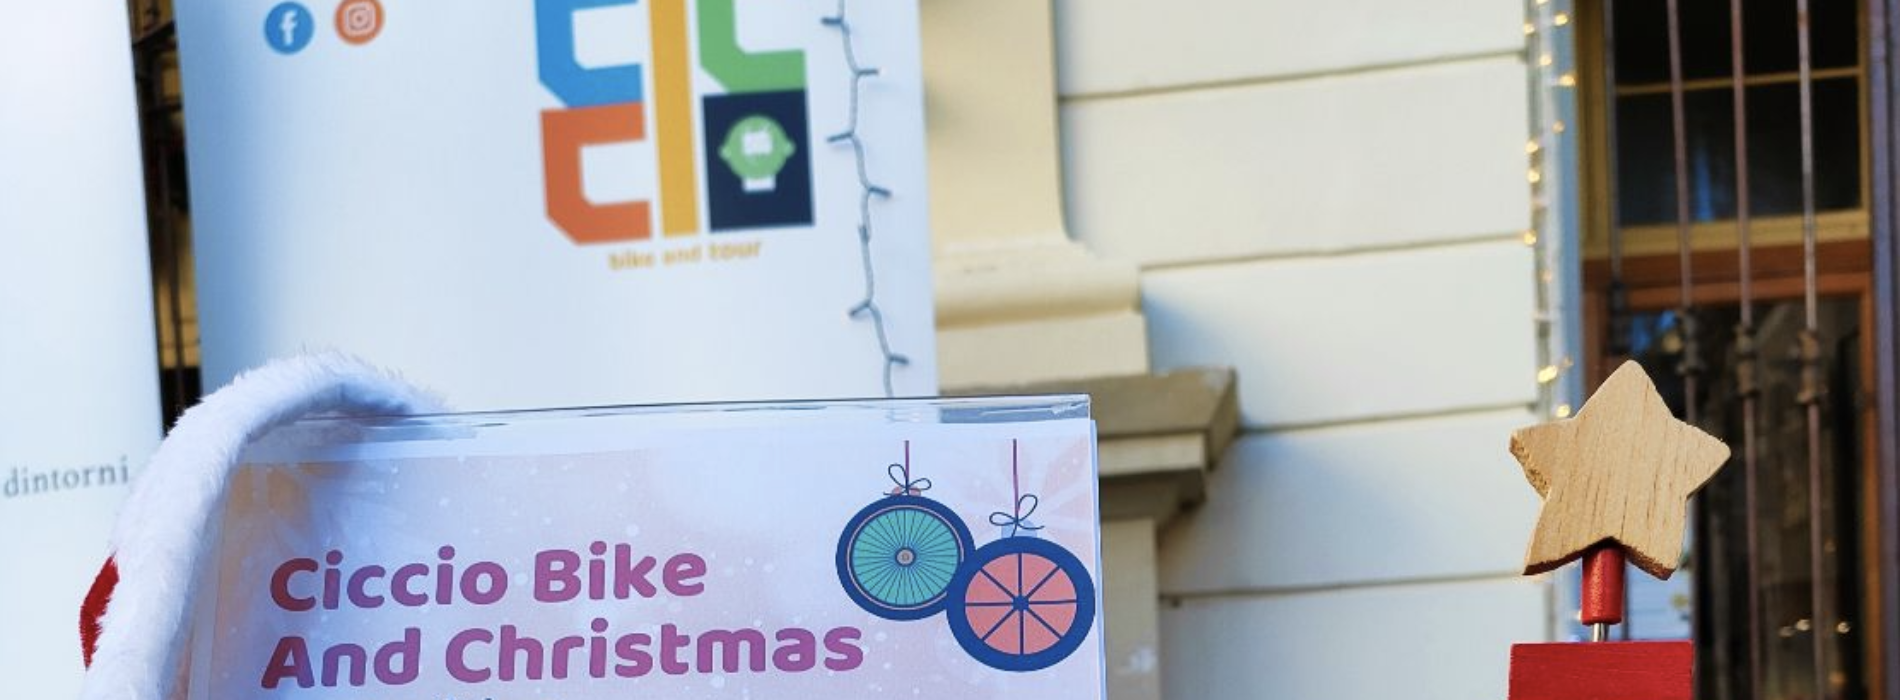 Ciccio Bike and Christmas, il Natale in sella dall’8 dicembre